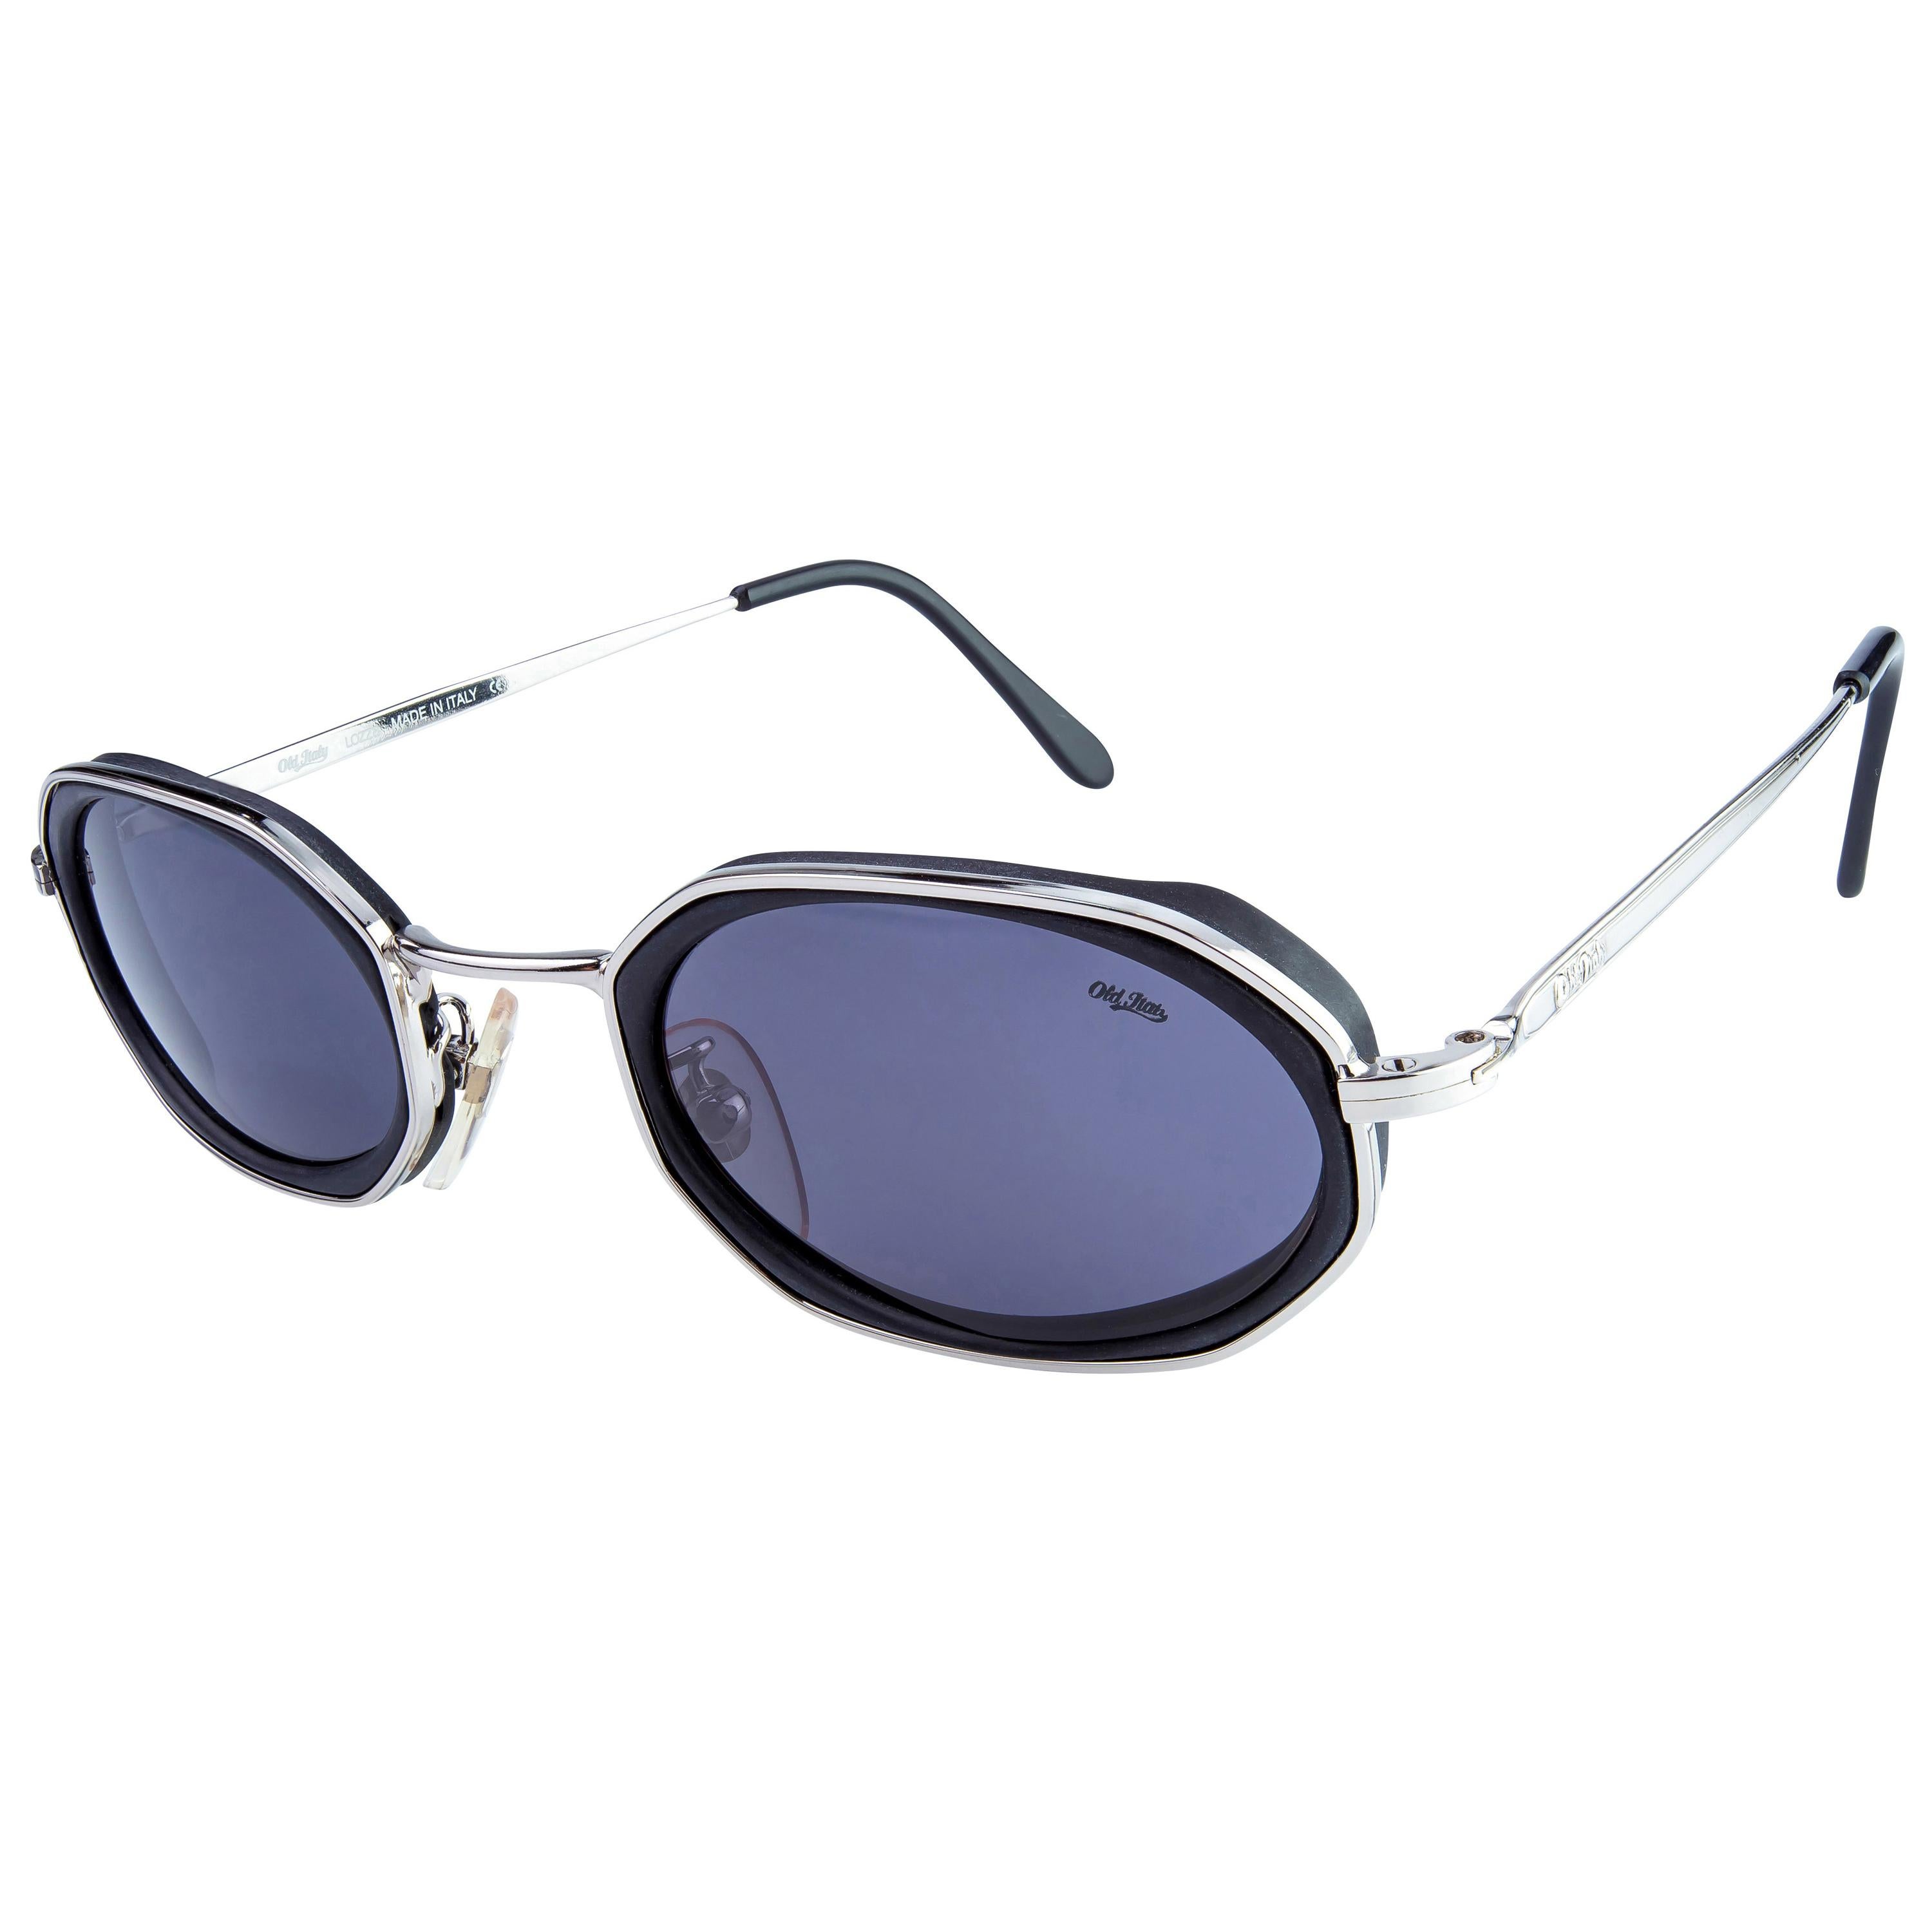 gemaakt in Italië in de jaren 80 Accessoires Zonnebrillen & Eyewear Zonnebrillen Zwarte zeshoekige zonnebril voor mannen en vrouwen Lozza vintage zonnebril 